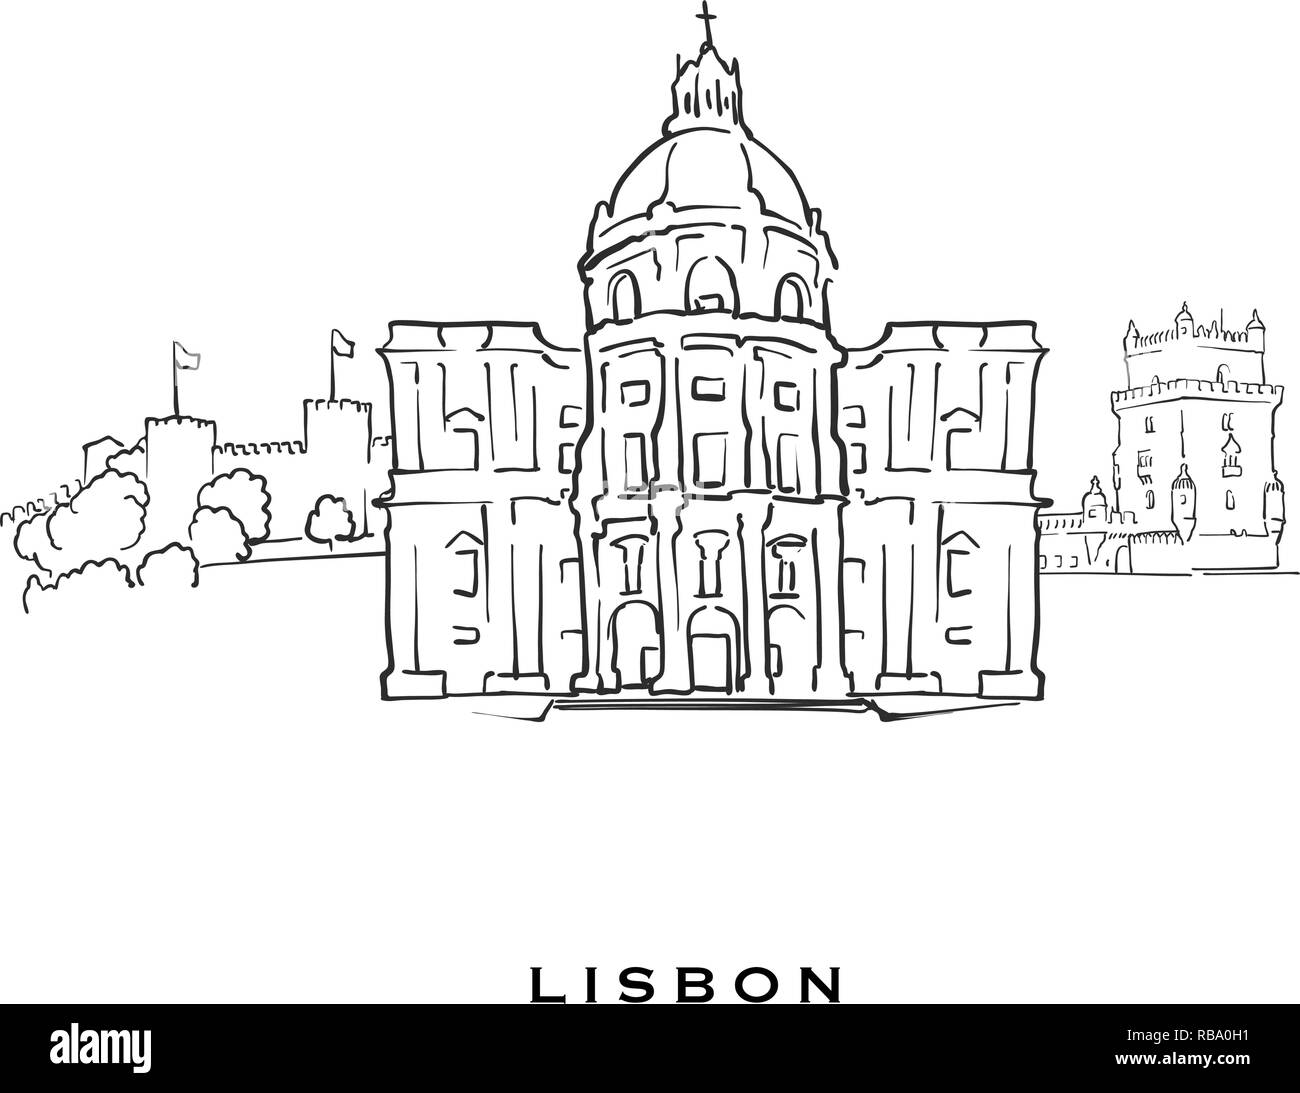 Lisbona portogallo famosa architettura. Delineato lo schizzo di vettore separato su sfondo bianco. Disegni di architettura di tutte le capitali europee. Illustrazione Vettoriale